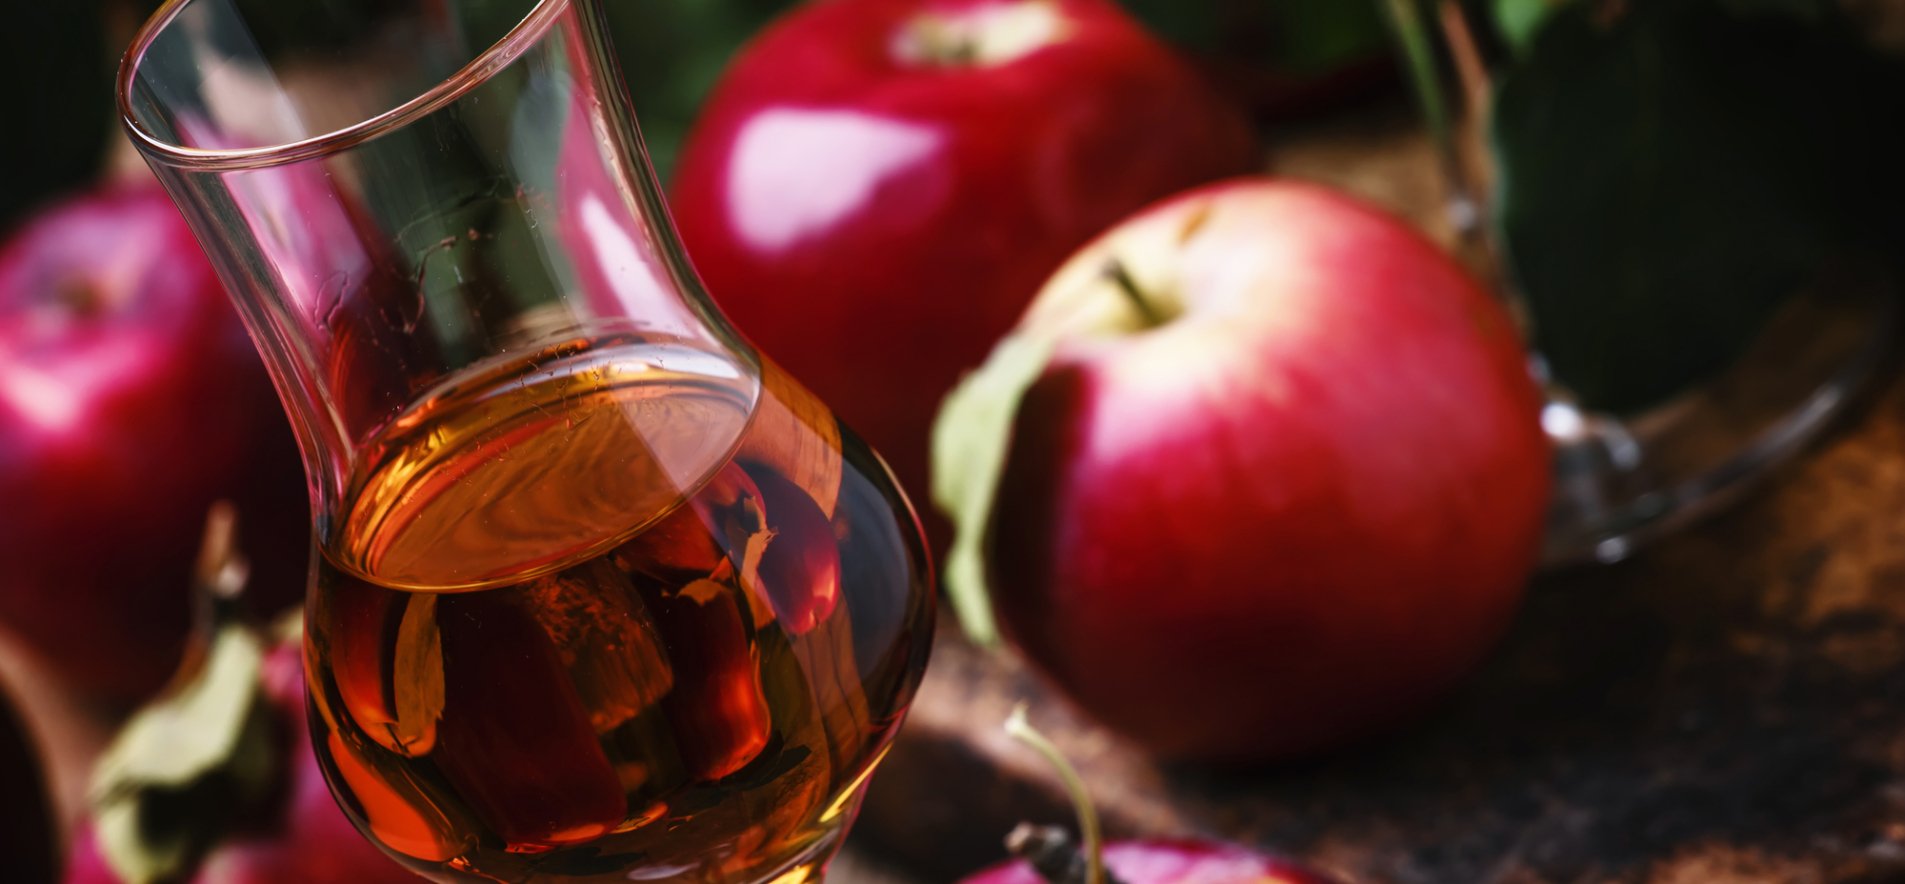 Домашнее яблочно-малиновое вино